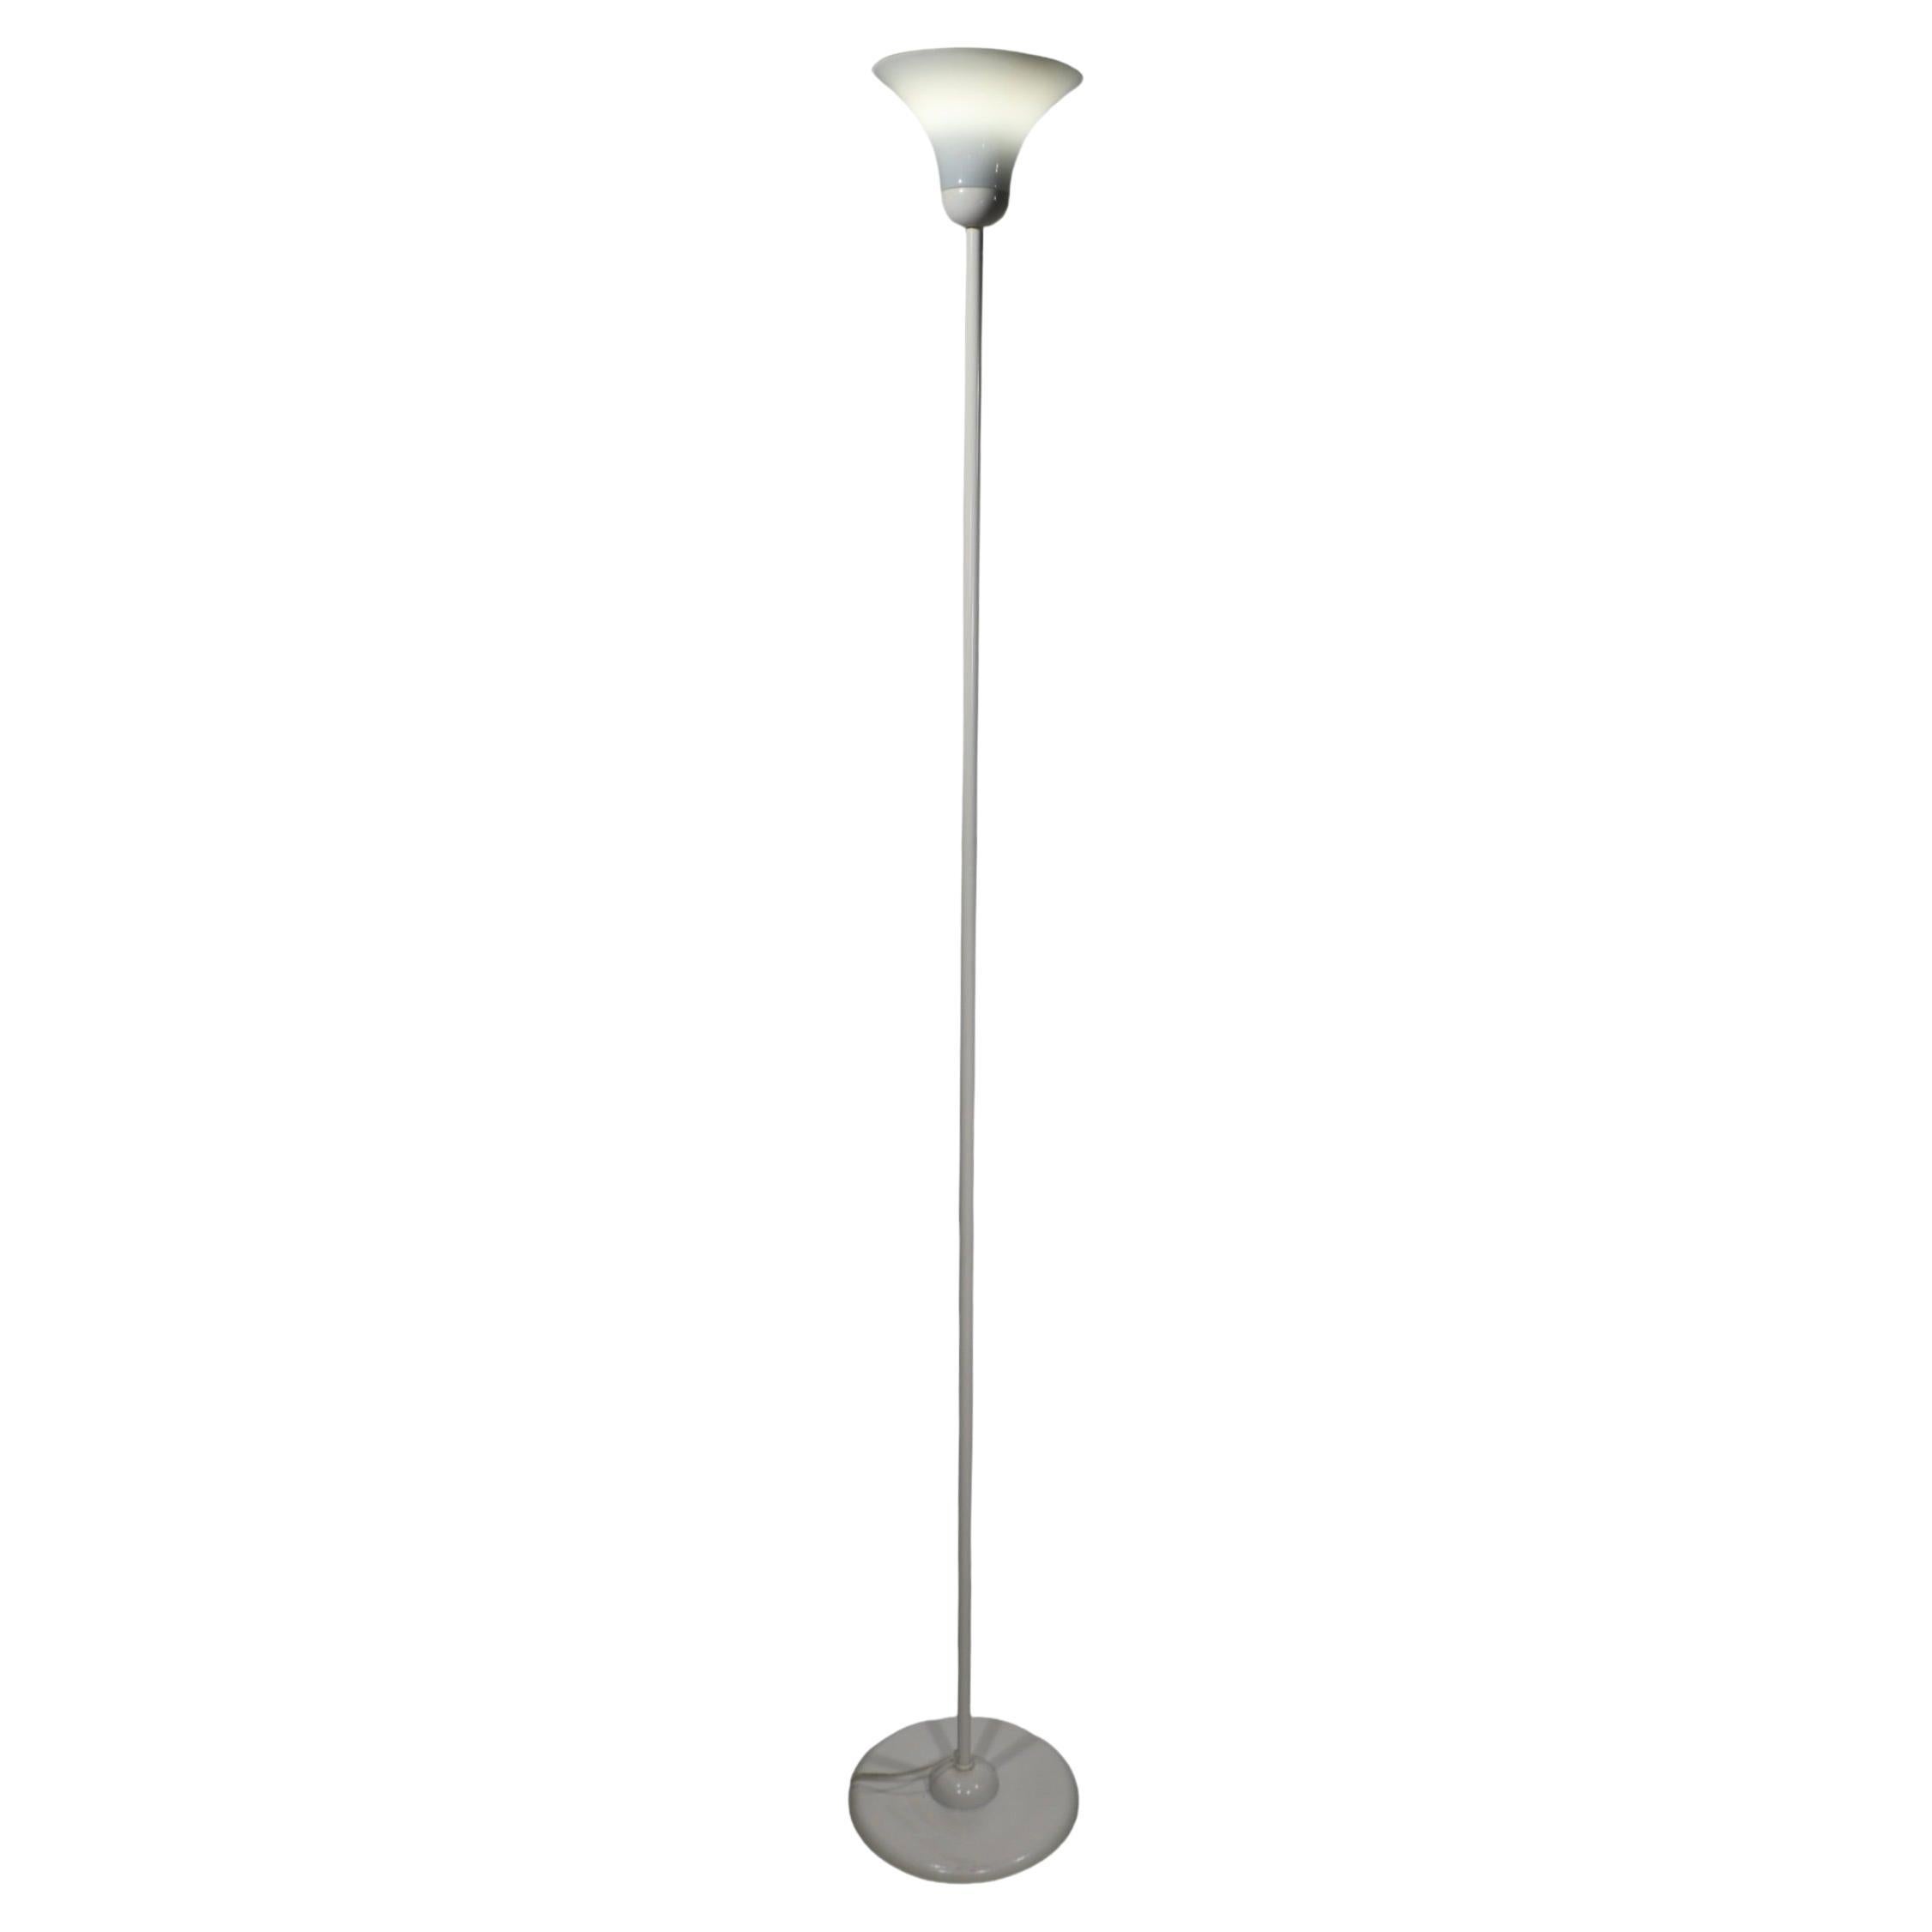 IKEA Floor Lamps